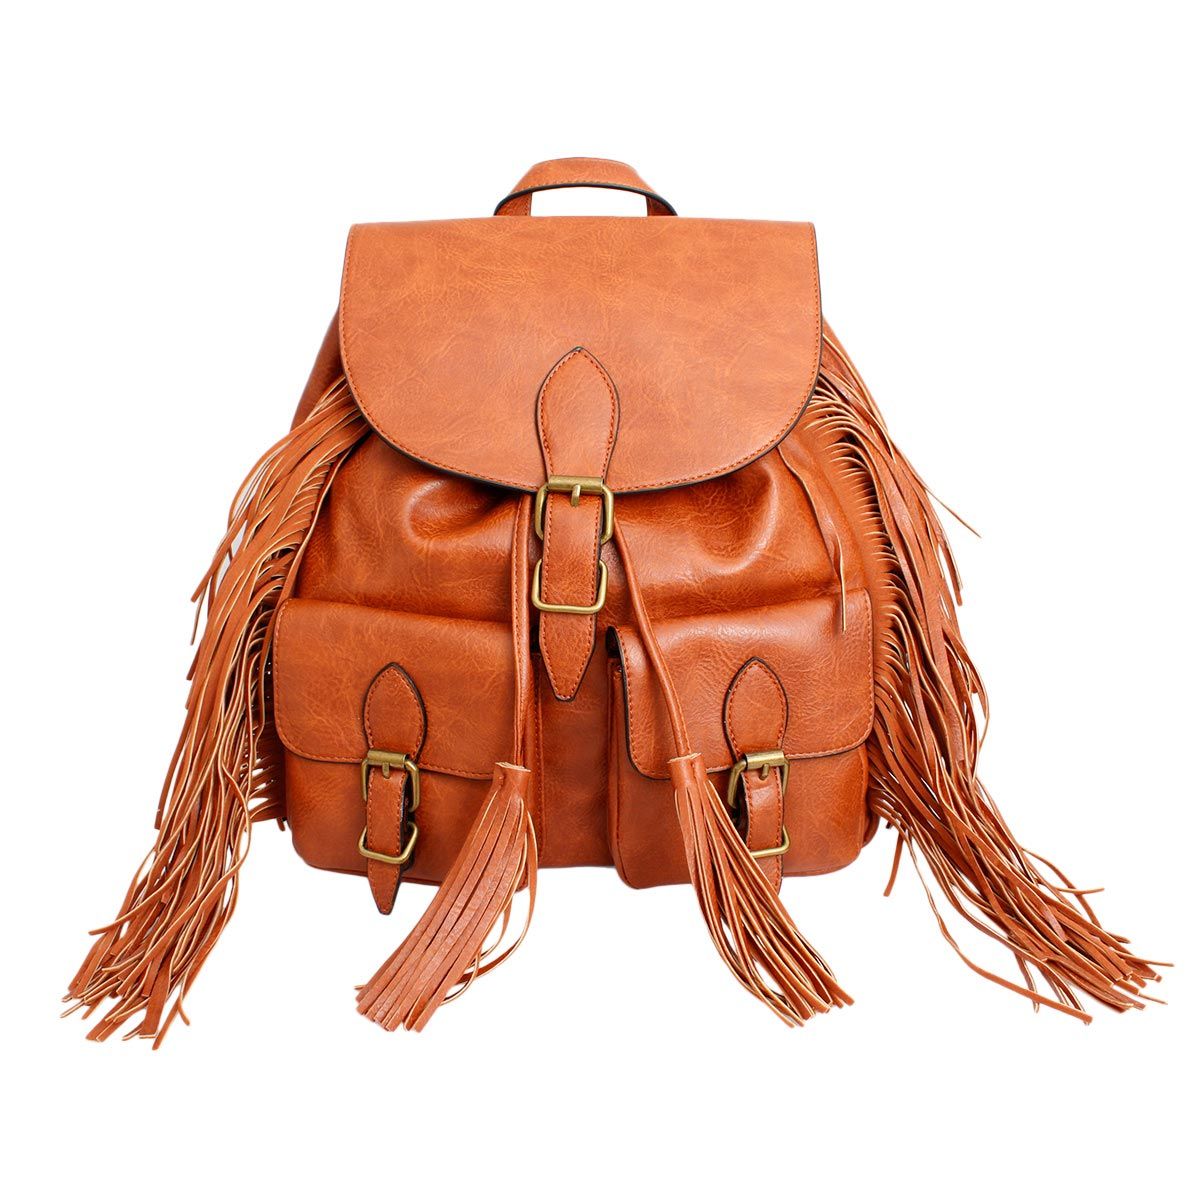 Backpack Brown Leather Fringe Bag for Women